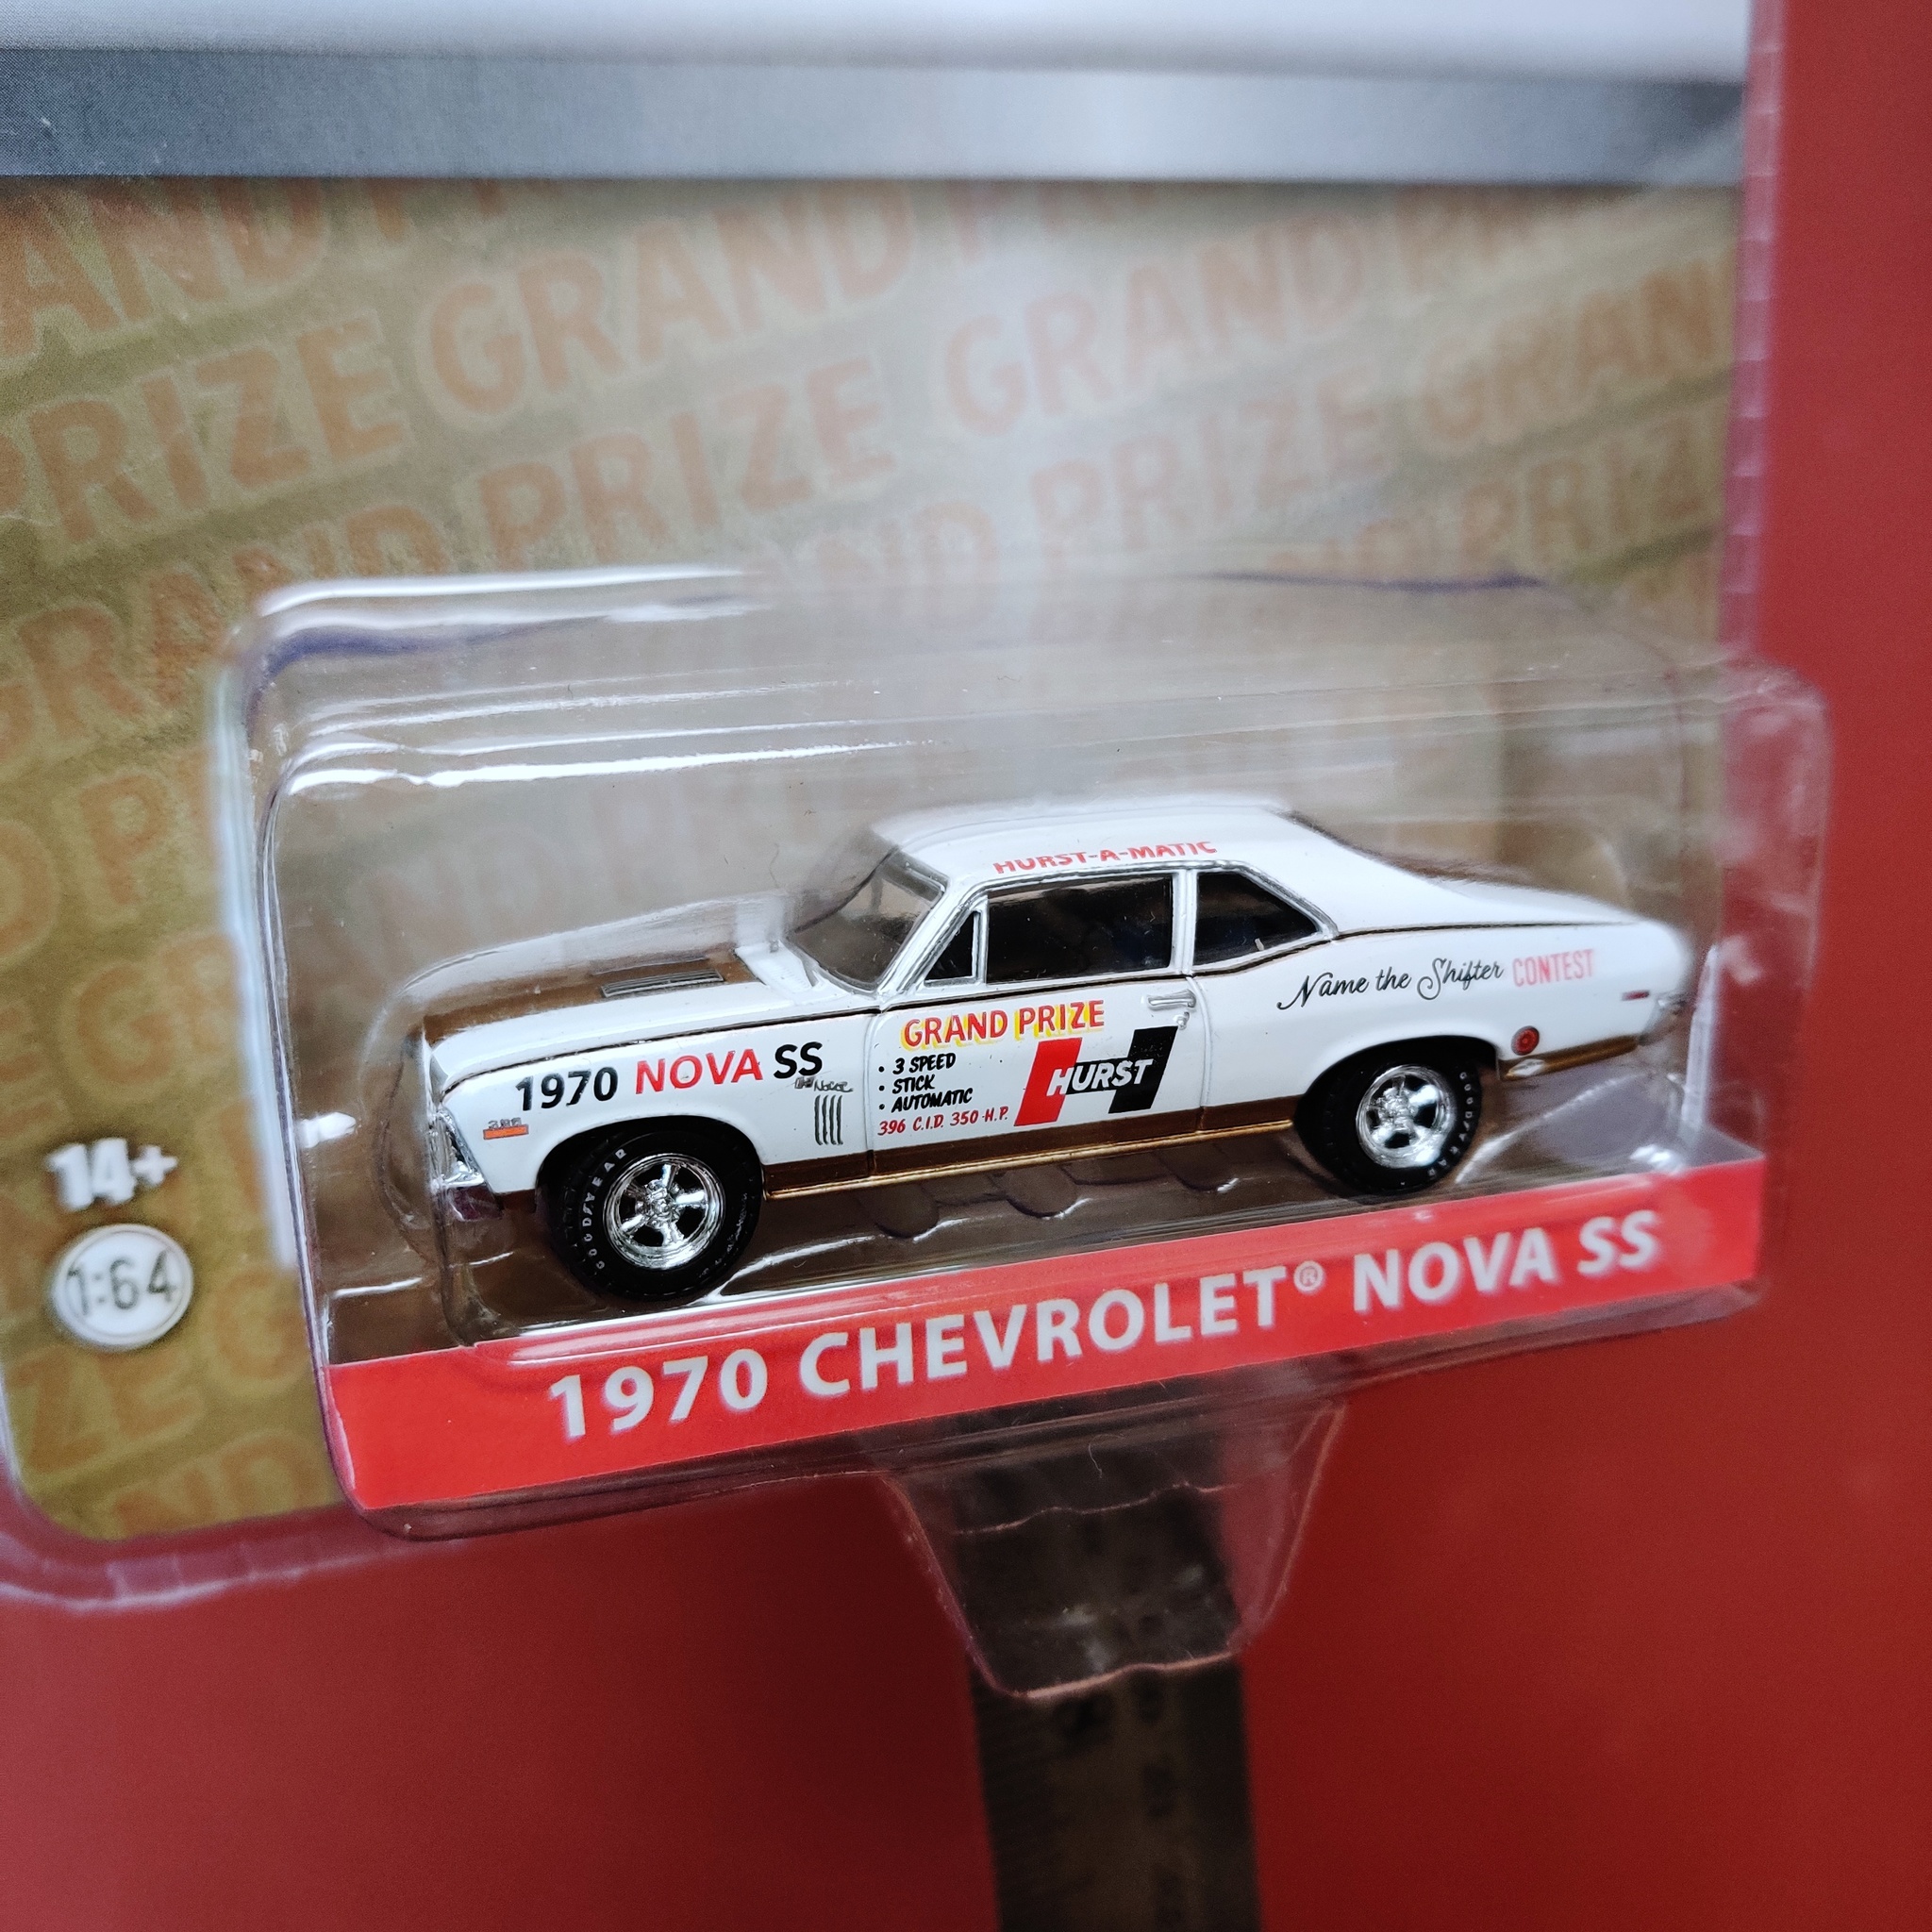 Skala 1/64 Chevrolet Nova SS 70' Hurst "Hurst-a-matic" från Greenlight Exclusive